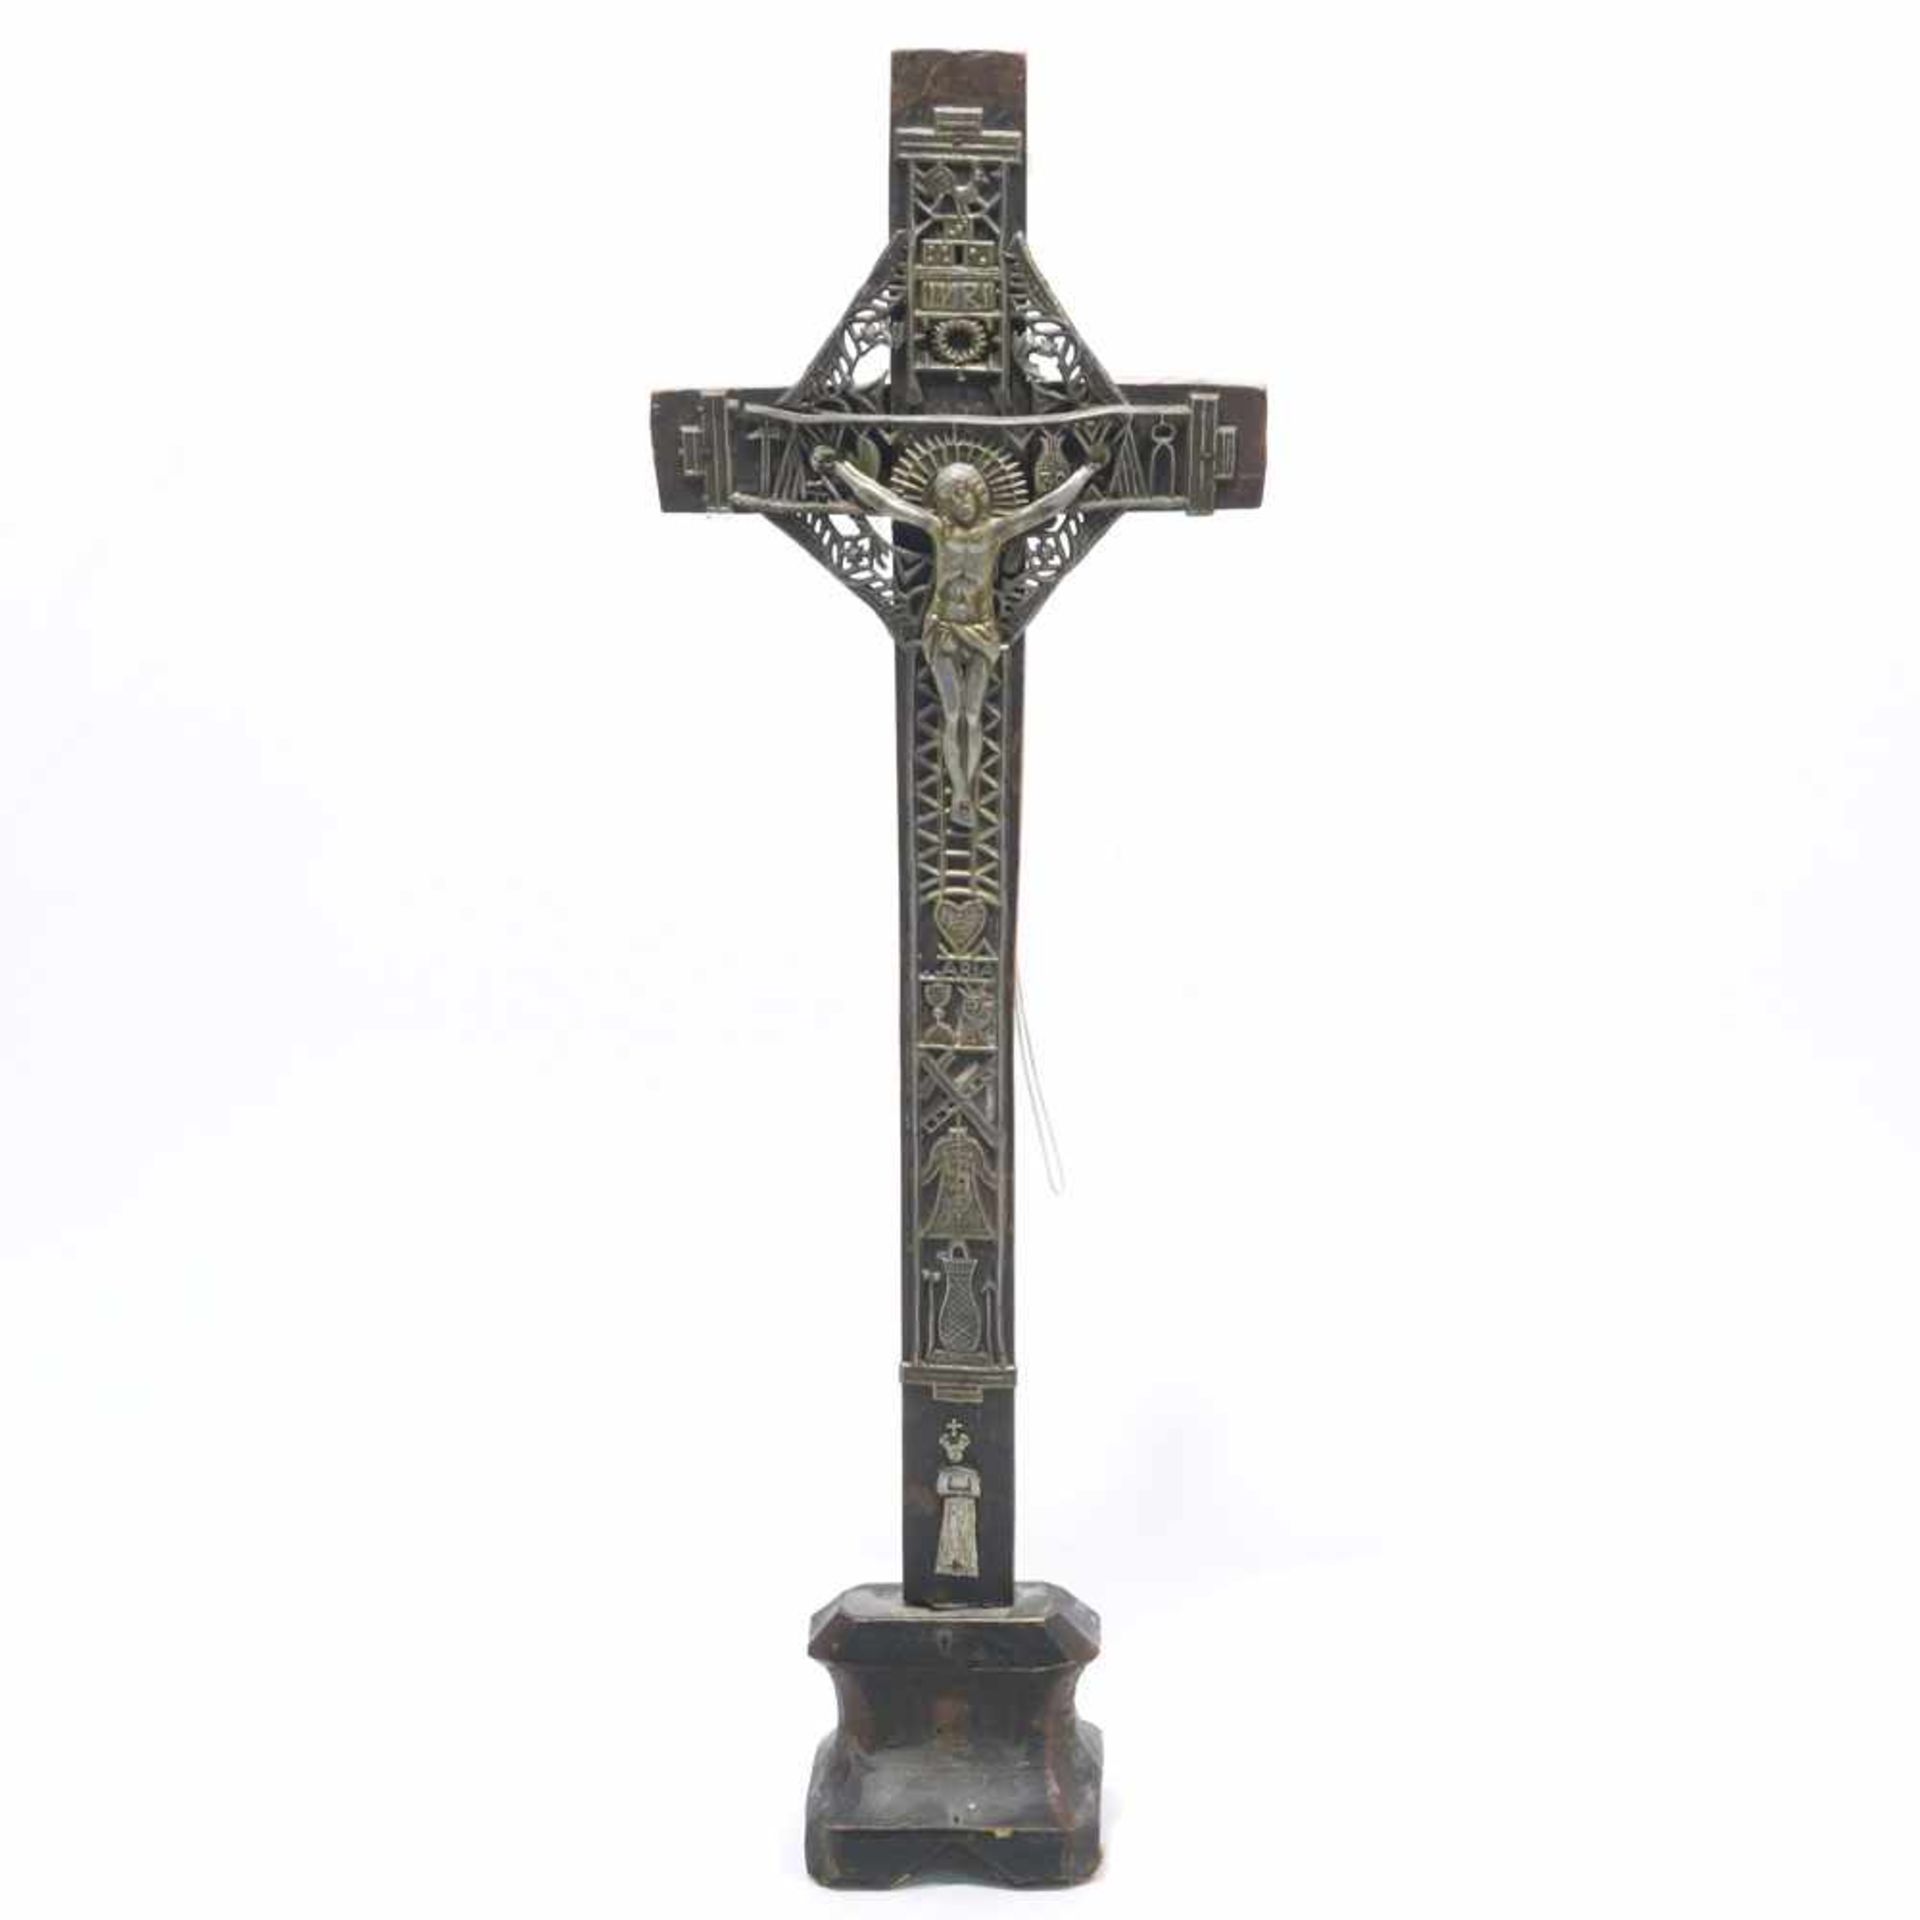 Standkruzifix19. Jh. Holzkreuz mit reliefierter und durchbrochen gearbeiteter Zinnapplikation.